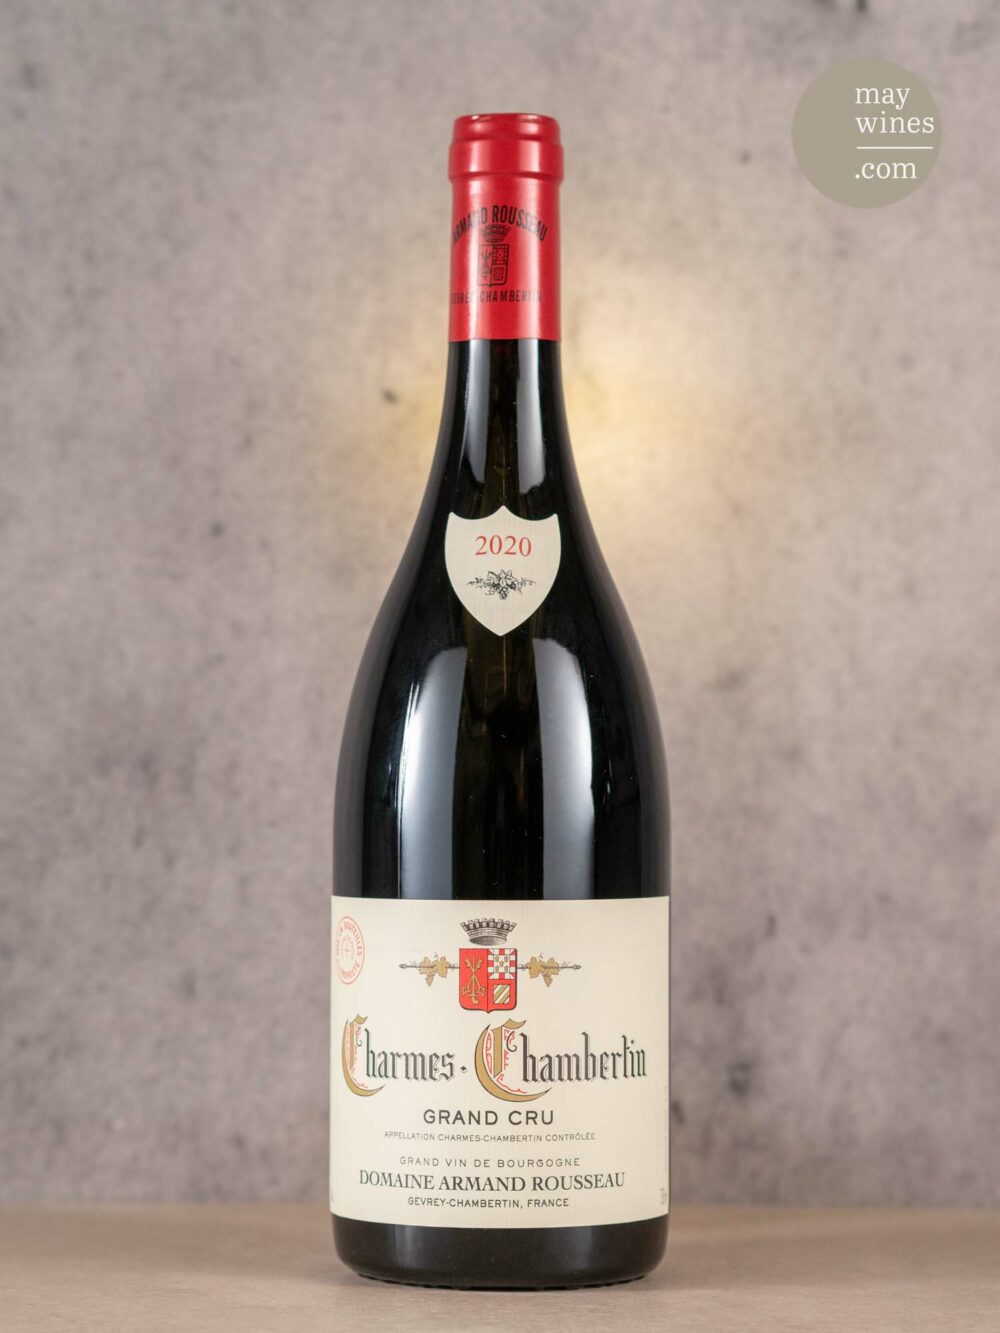 May Wines – Rotwein – 2020 Charmes-Chambertin Grand Cru - Domaine Armand Rousseau